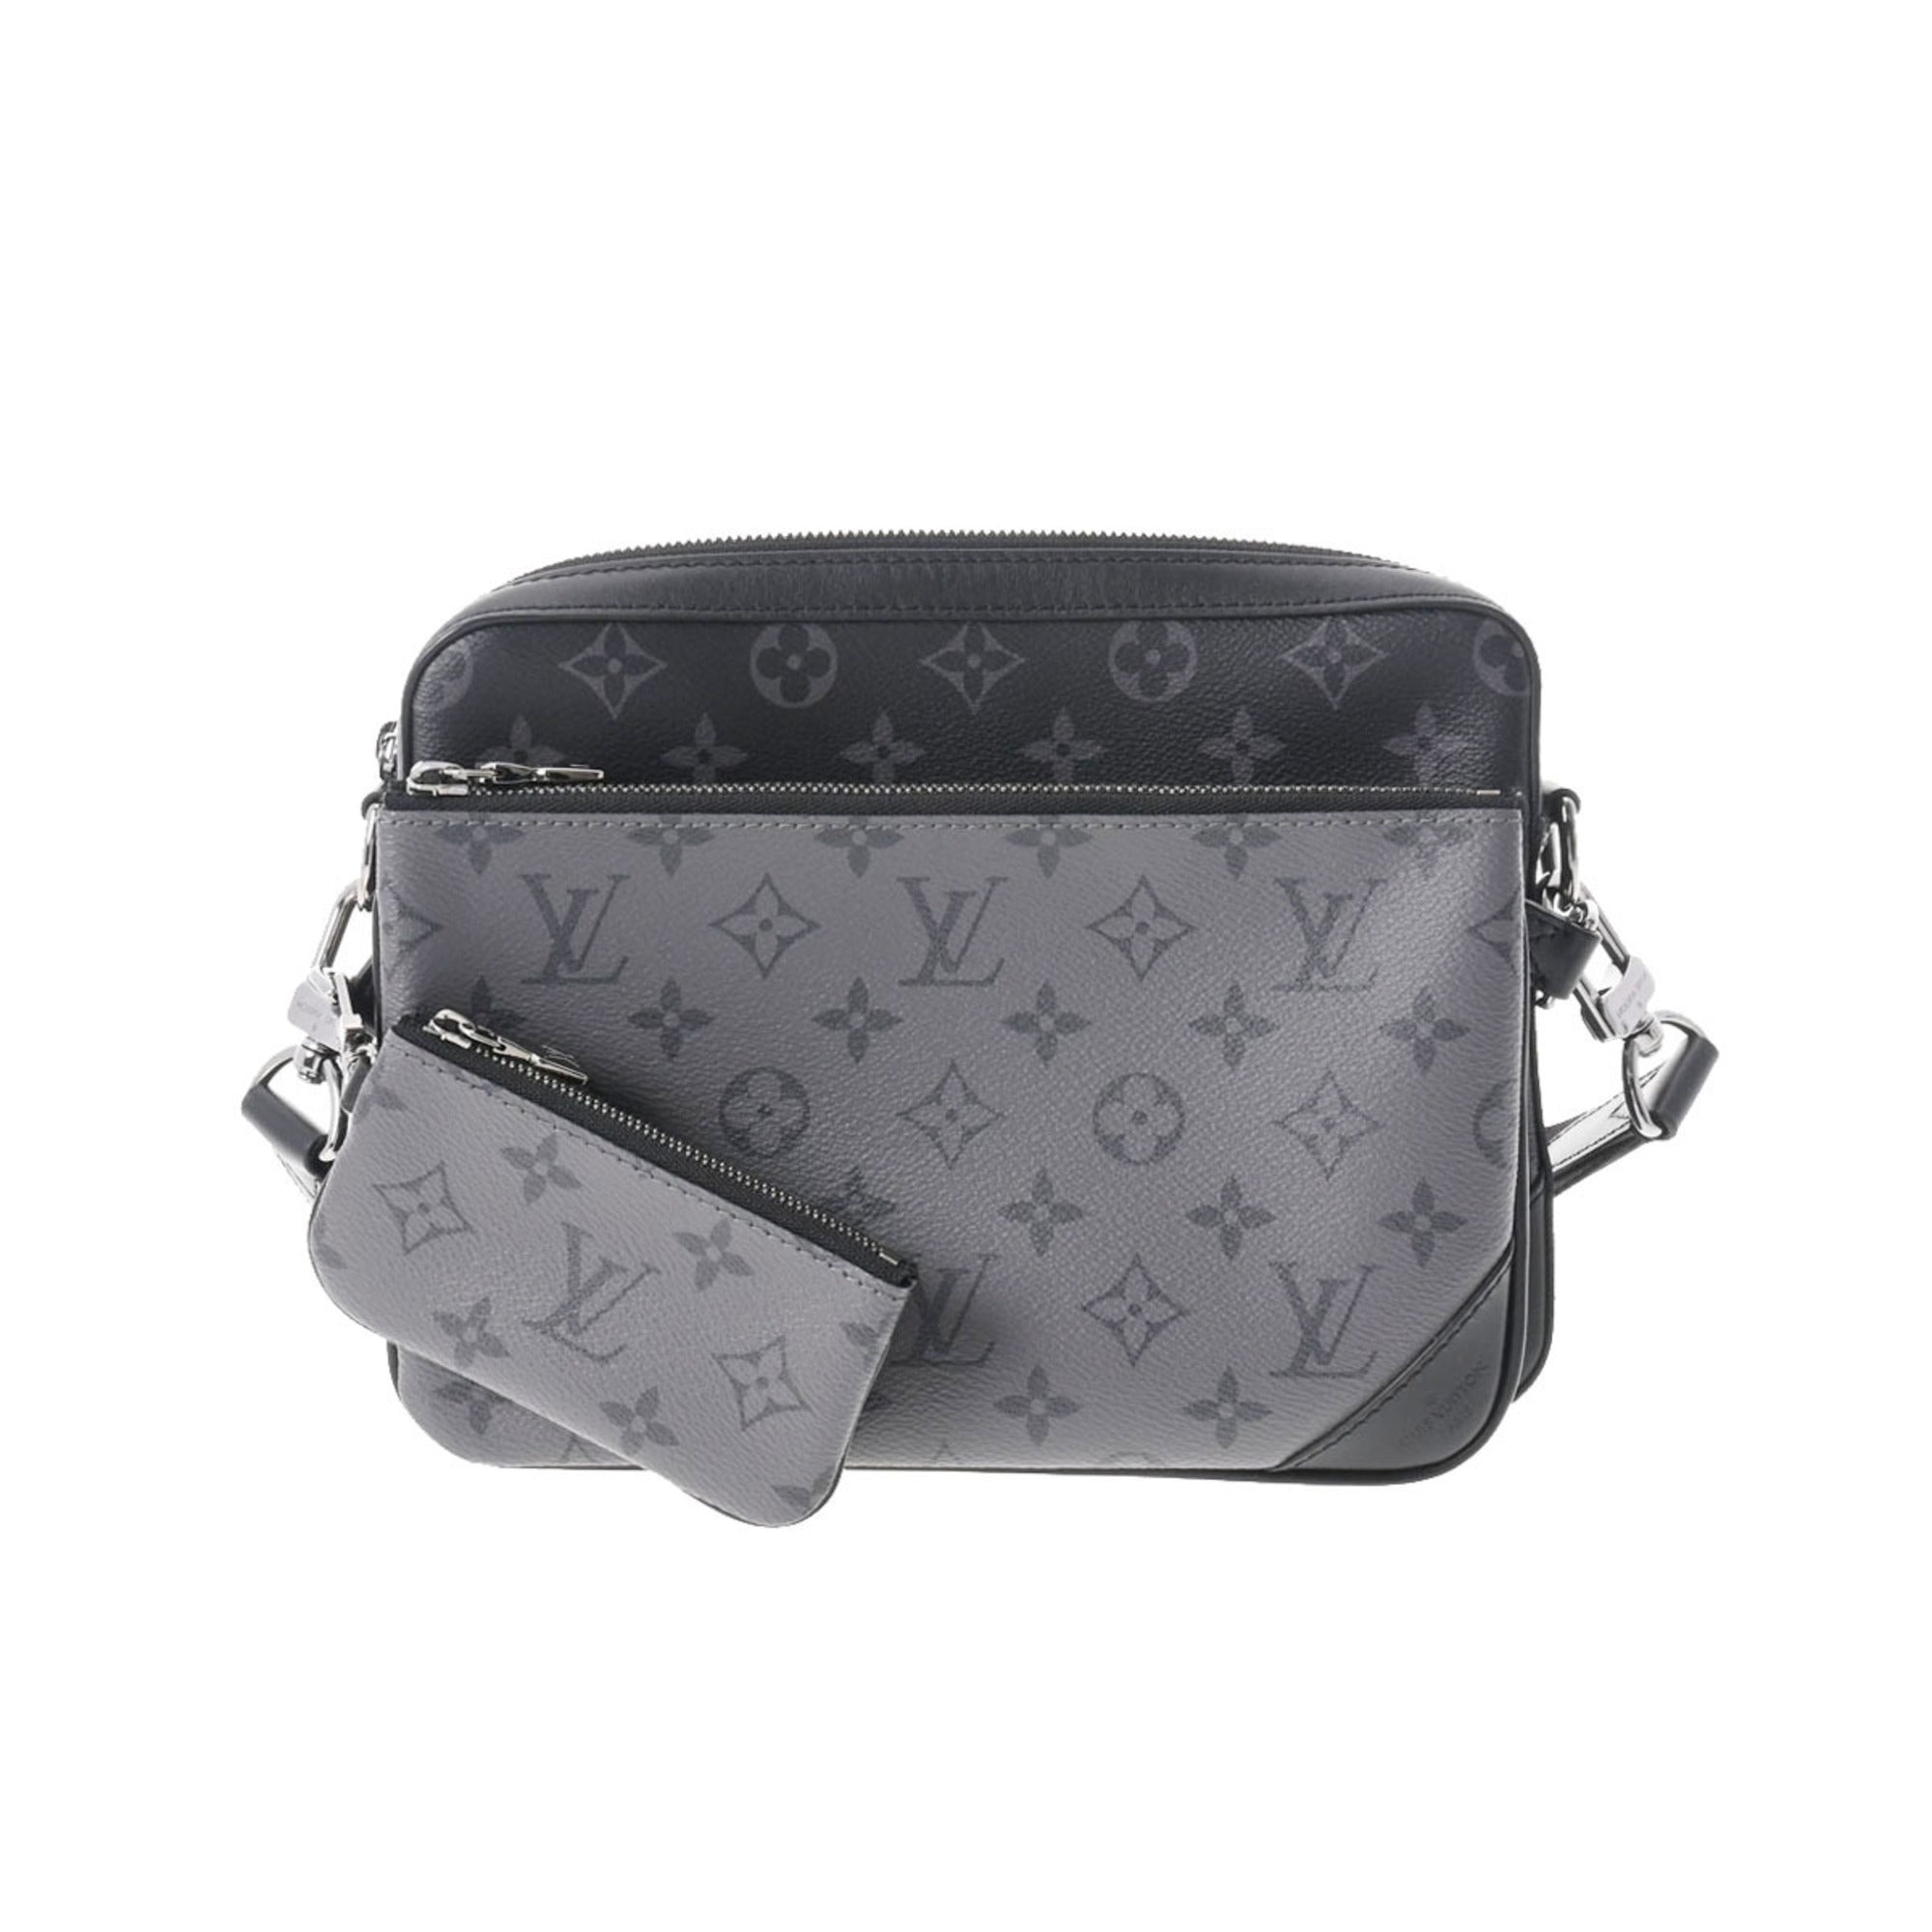  Louis Vuitton M69443 Men's Shoulder Bag, Monogram Black,  Gray, gray : Clothing, Shoes & Jewelry